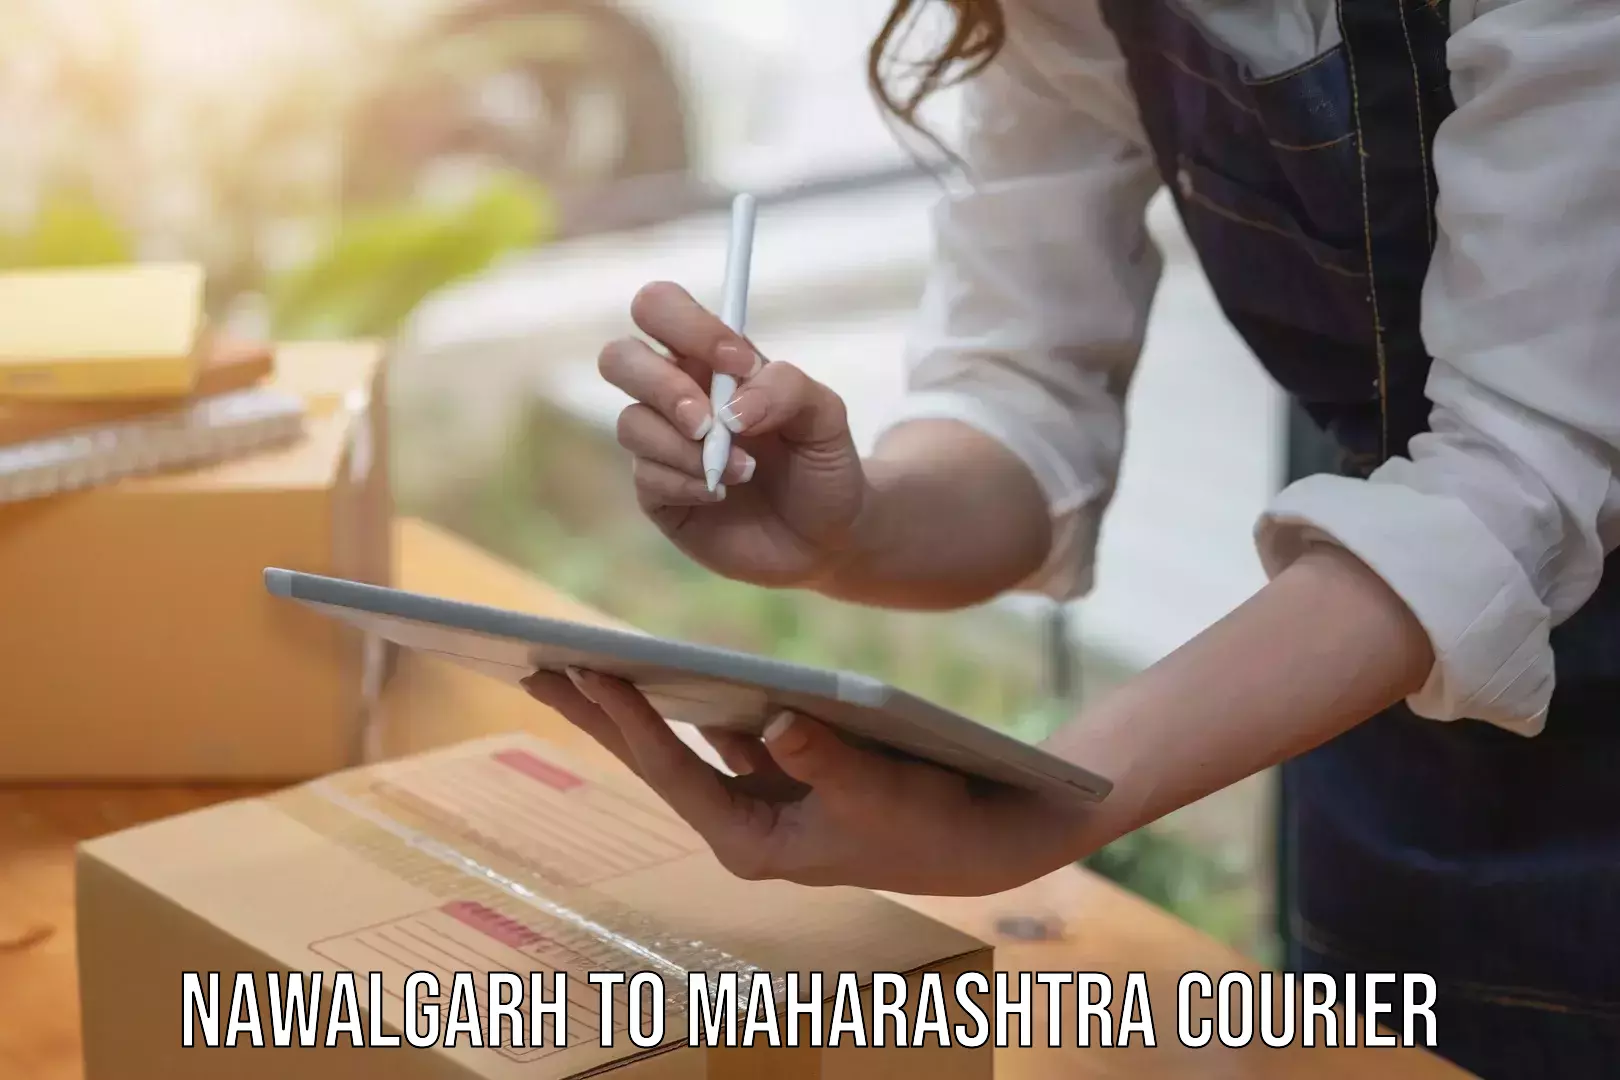 Express logistics providers Nawalgarh to Raigarh Maharashtra